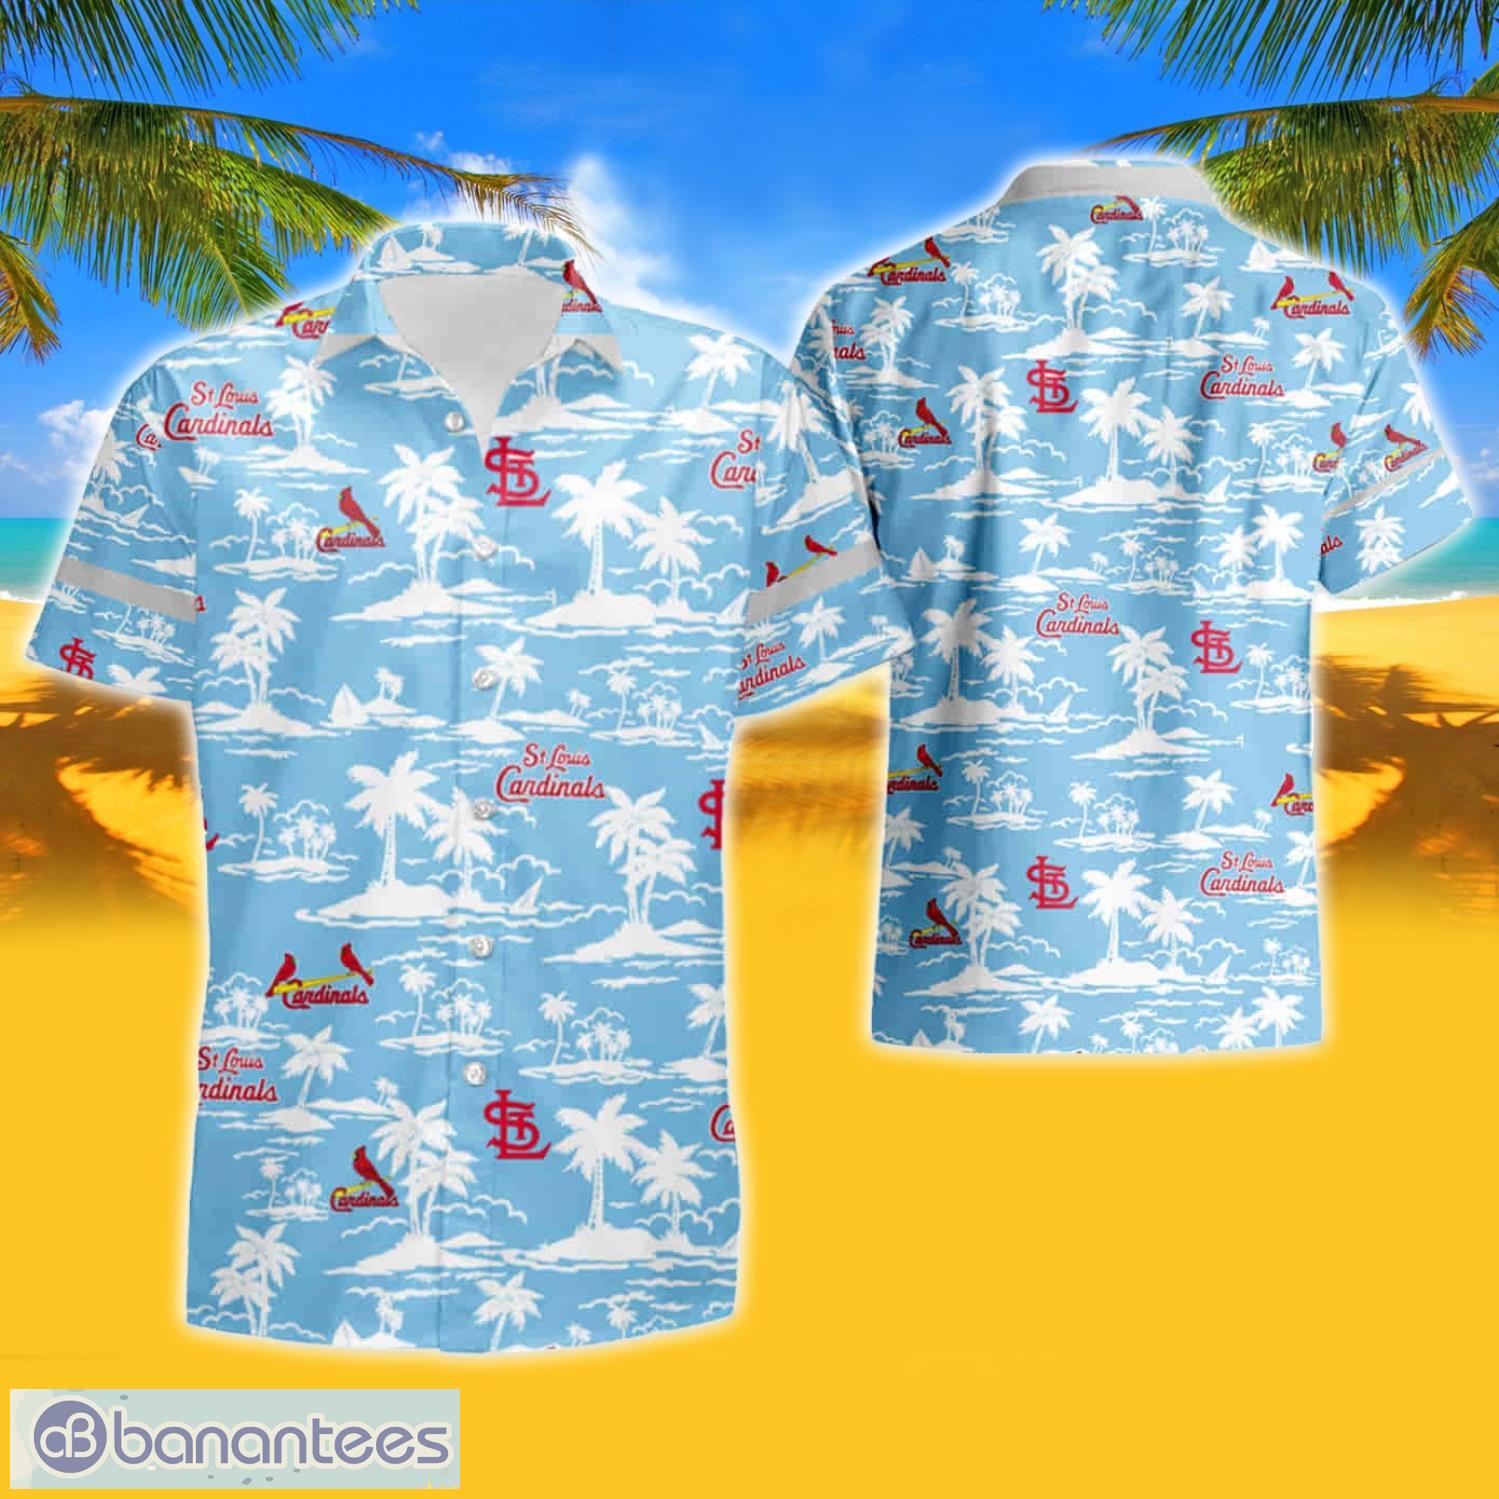 St Louis Cardinals Vintage Mlb Short Sleeve Aloha Hawaiian Shirt And Shorts  Beach Gift - Banantees